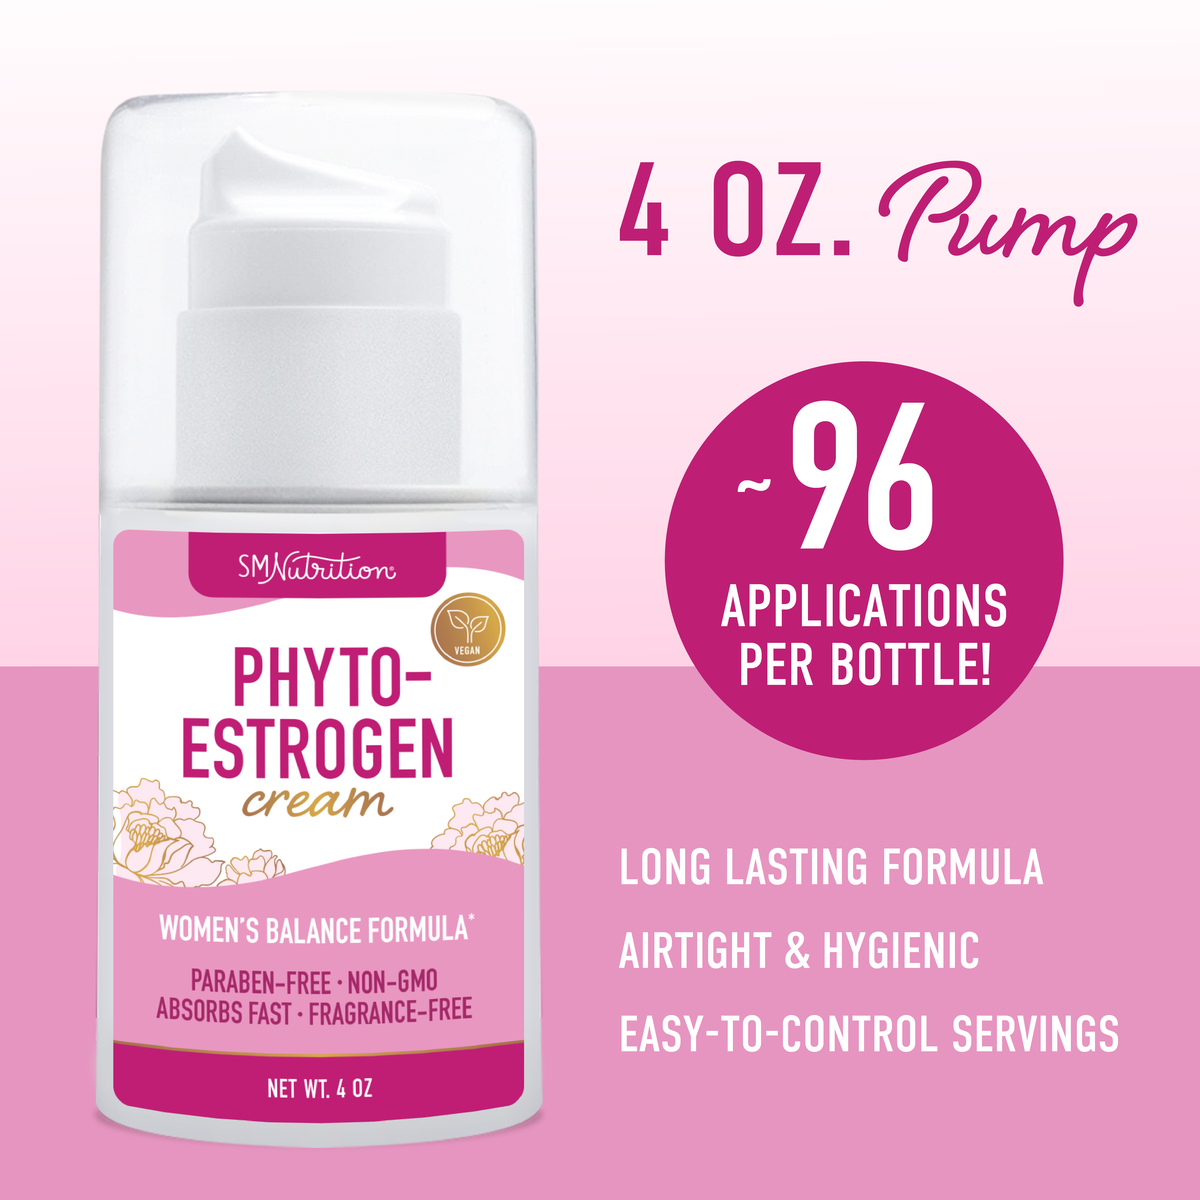 Phyto-Estrogen Cream, 4oz. Pump